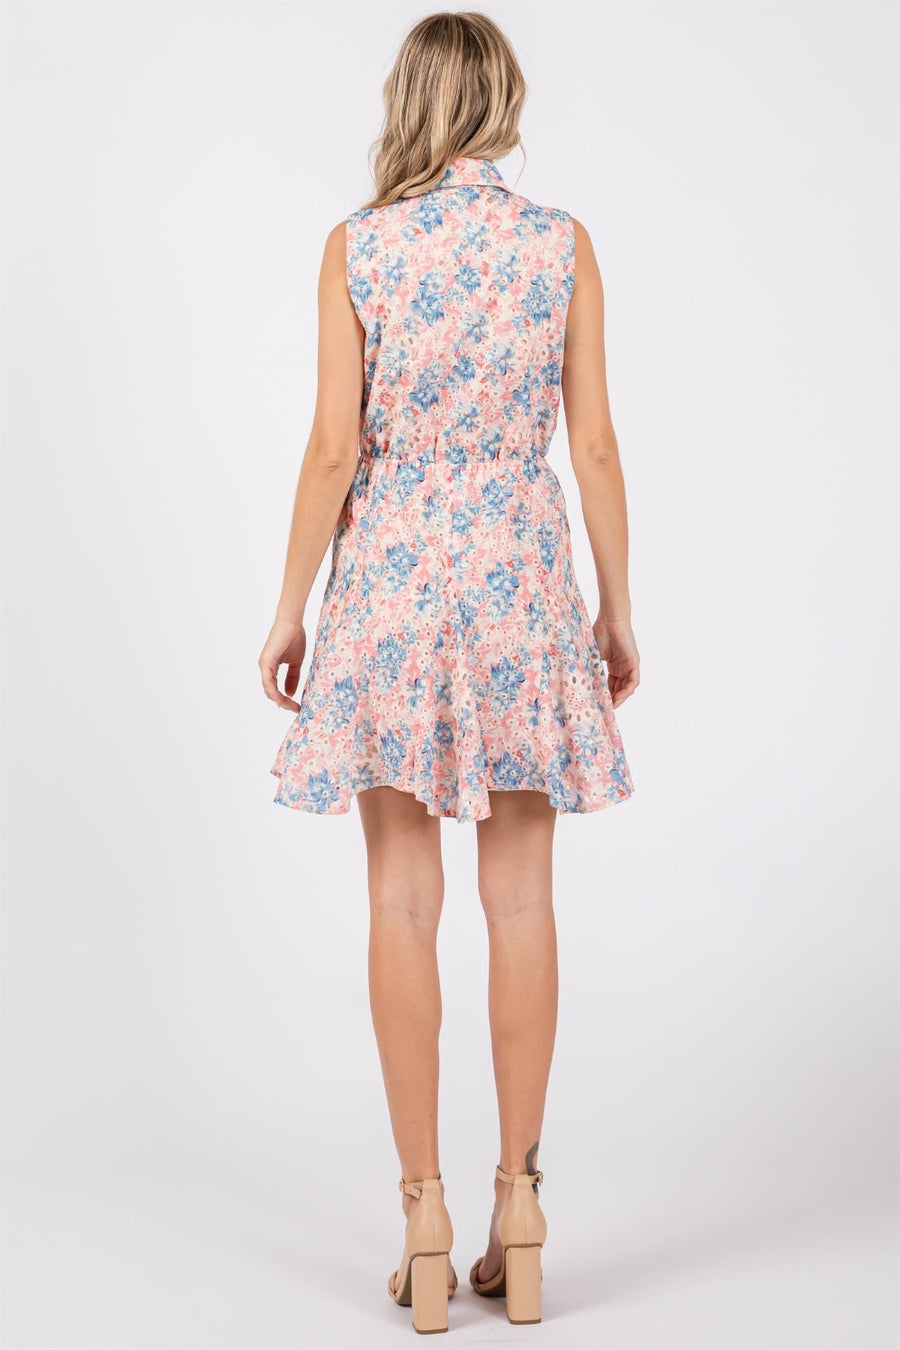 GeeGee Floral Eyelet Sleeveless Mini Dress (S-3XL)